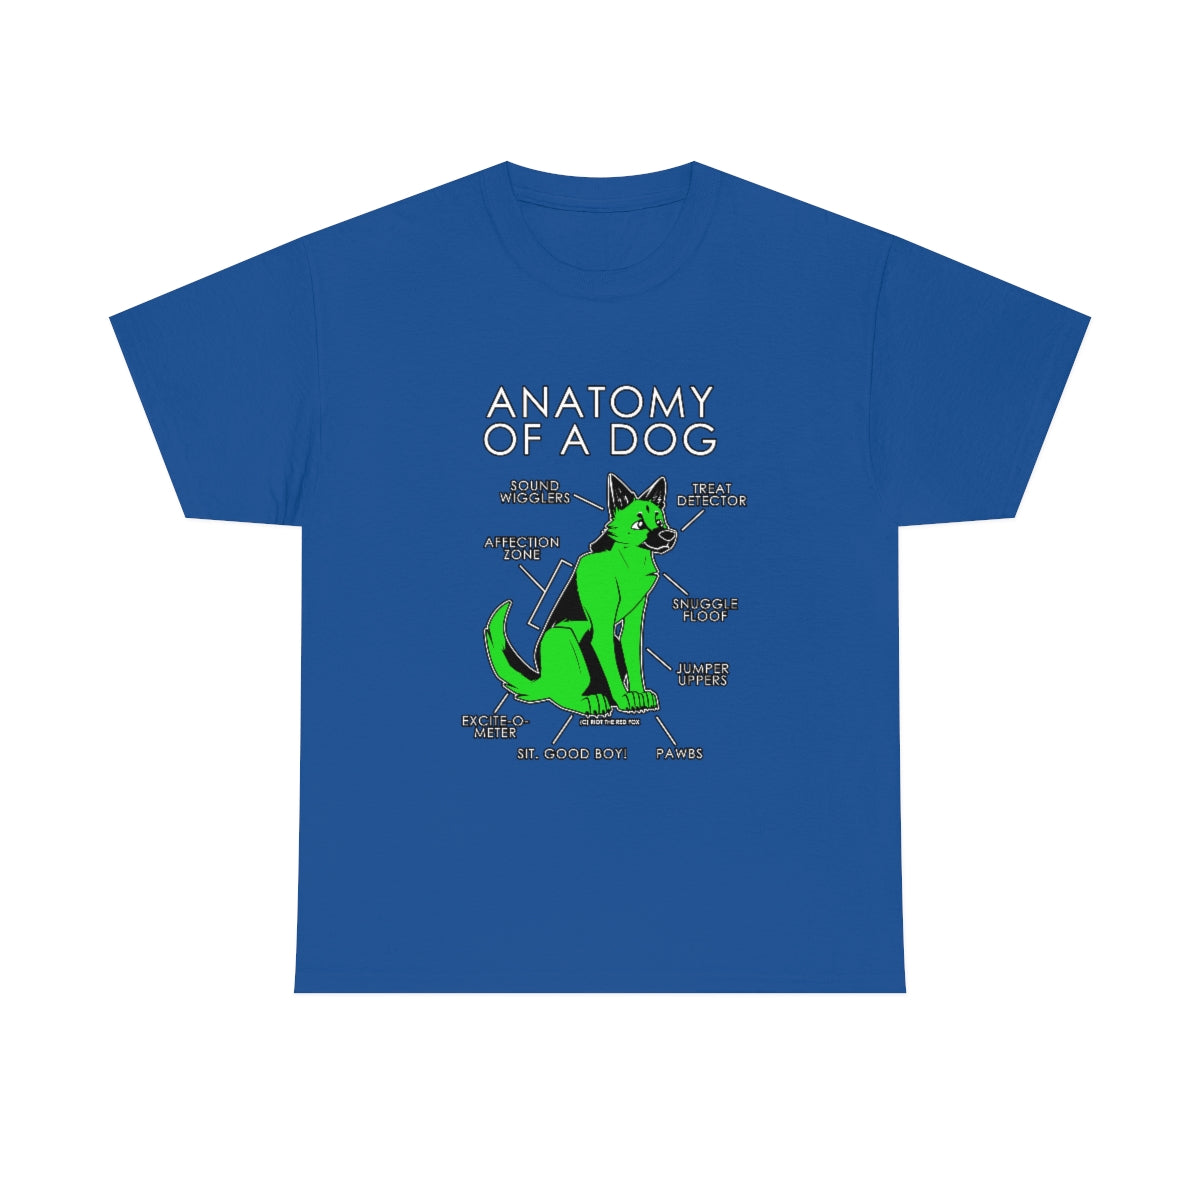 Dog Green - T-Shirt T-Shirt Artworktee Royal Blue S 